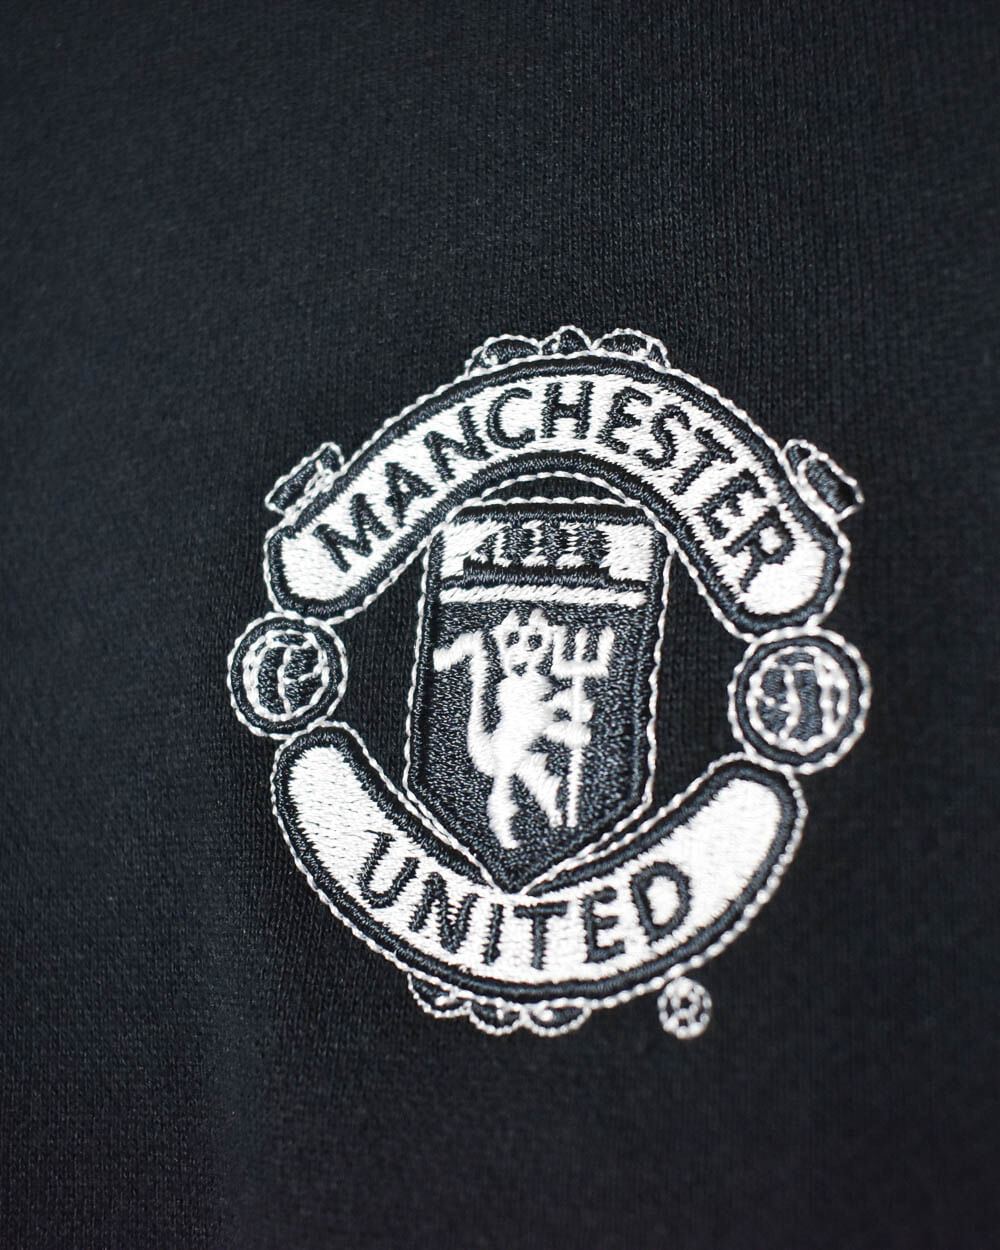 Black Nike 2003/04 Manchester United Training Sweatshirt - Large